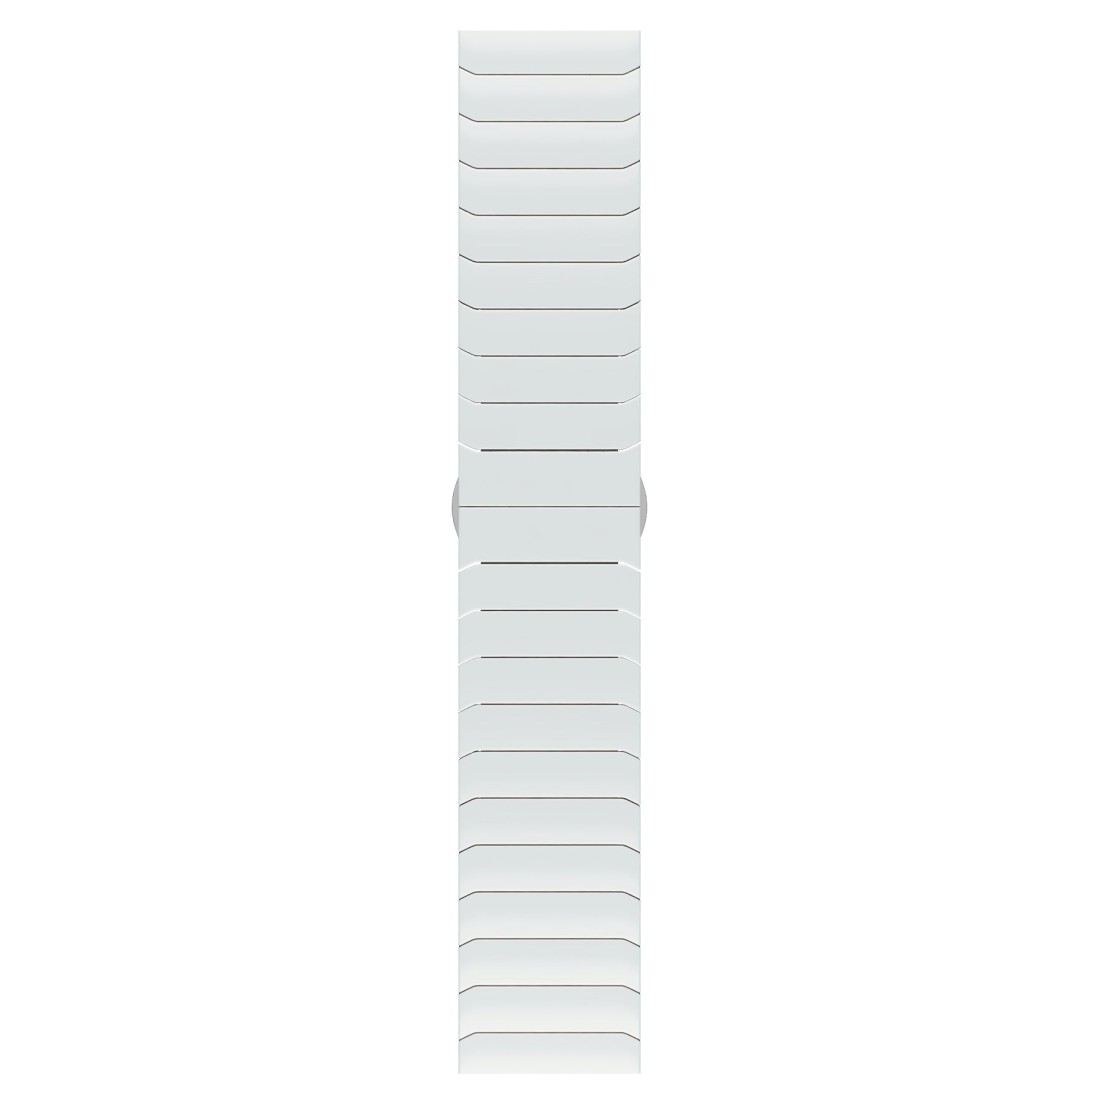 Apple Watch Uyumlu Granit Loop White